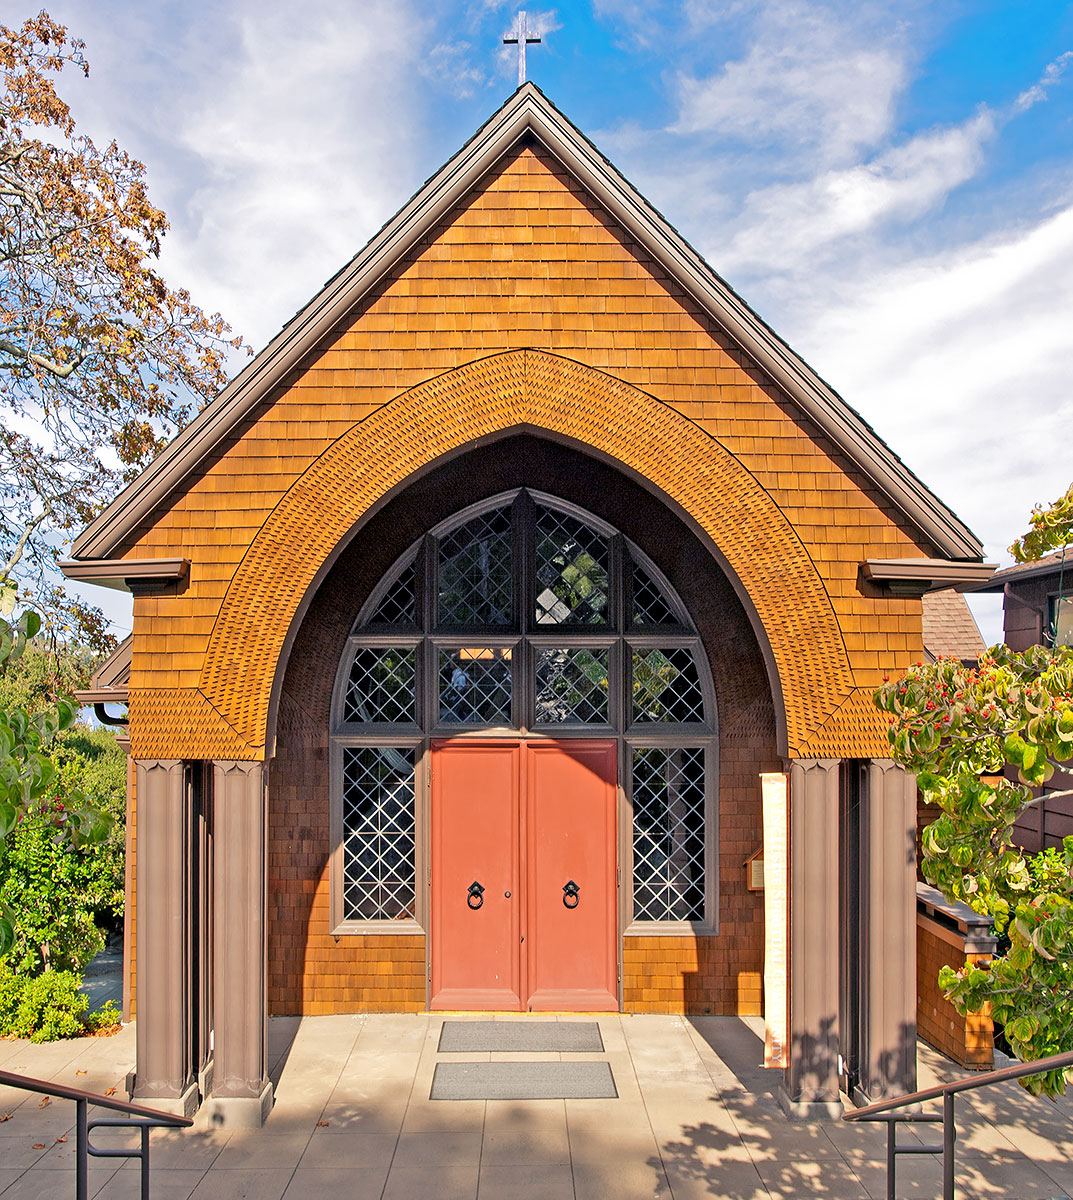 Sausalito Presbyterian Church by Ernest Coxhead